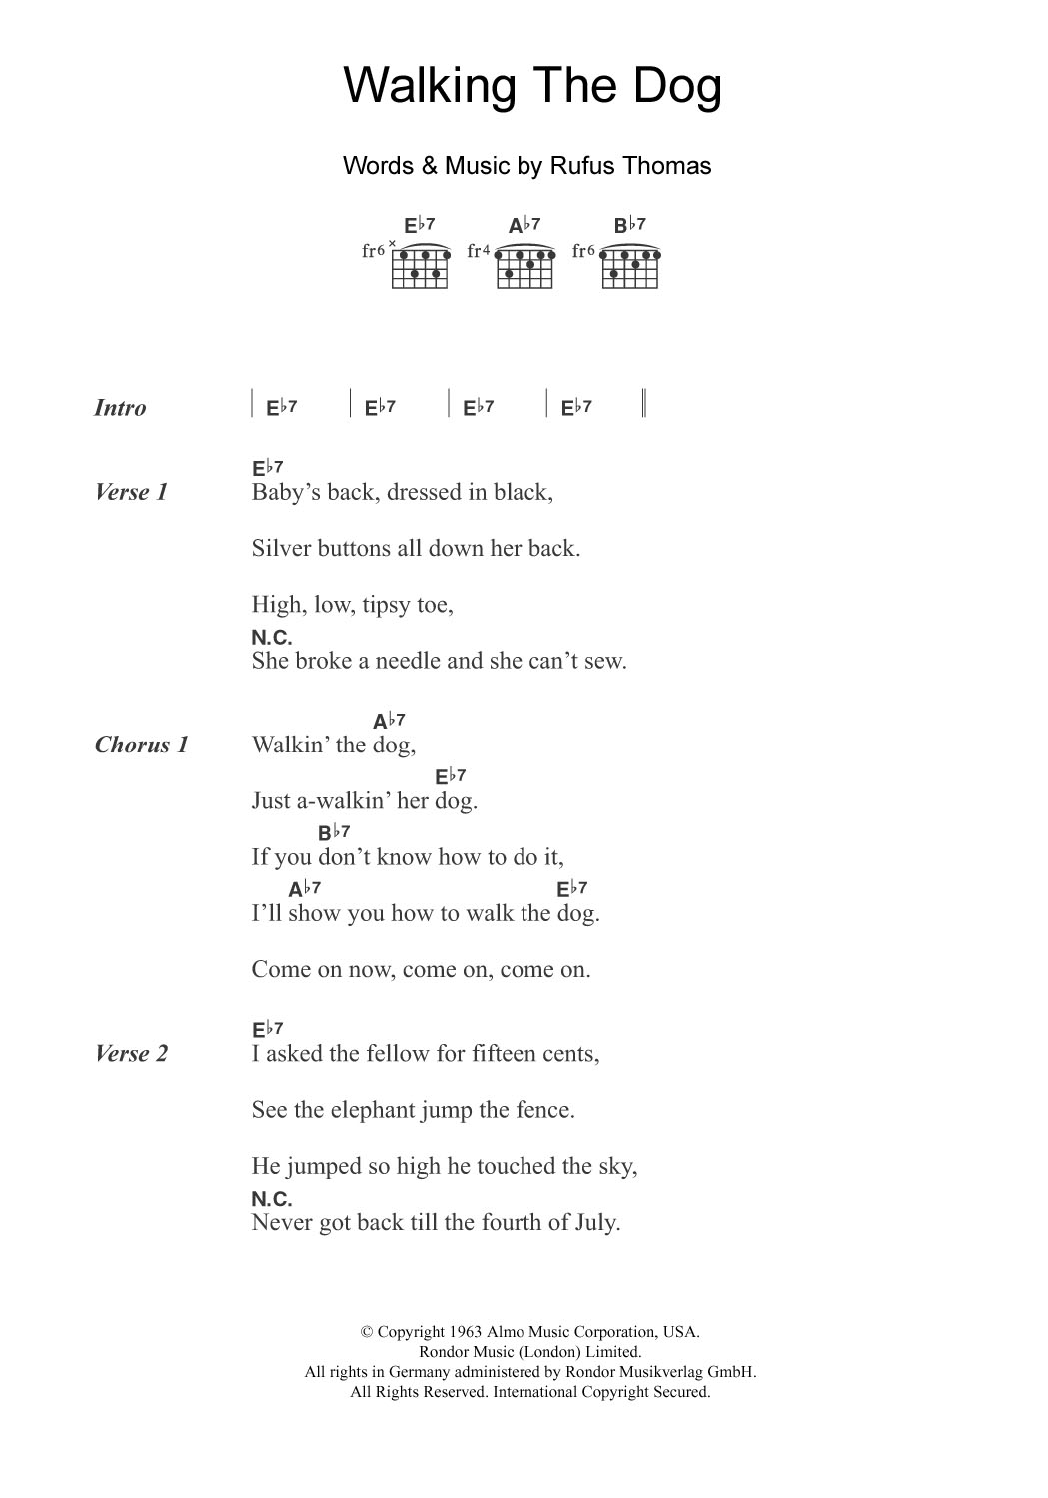 Rufus Thomas Walking The Dog Sheet Music Notes & Chords for Guitar Chords/Lyrics - Download or Print PDF